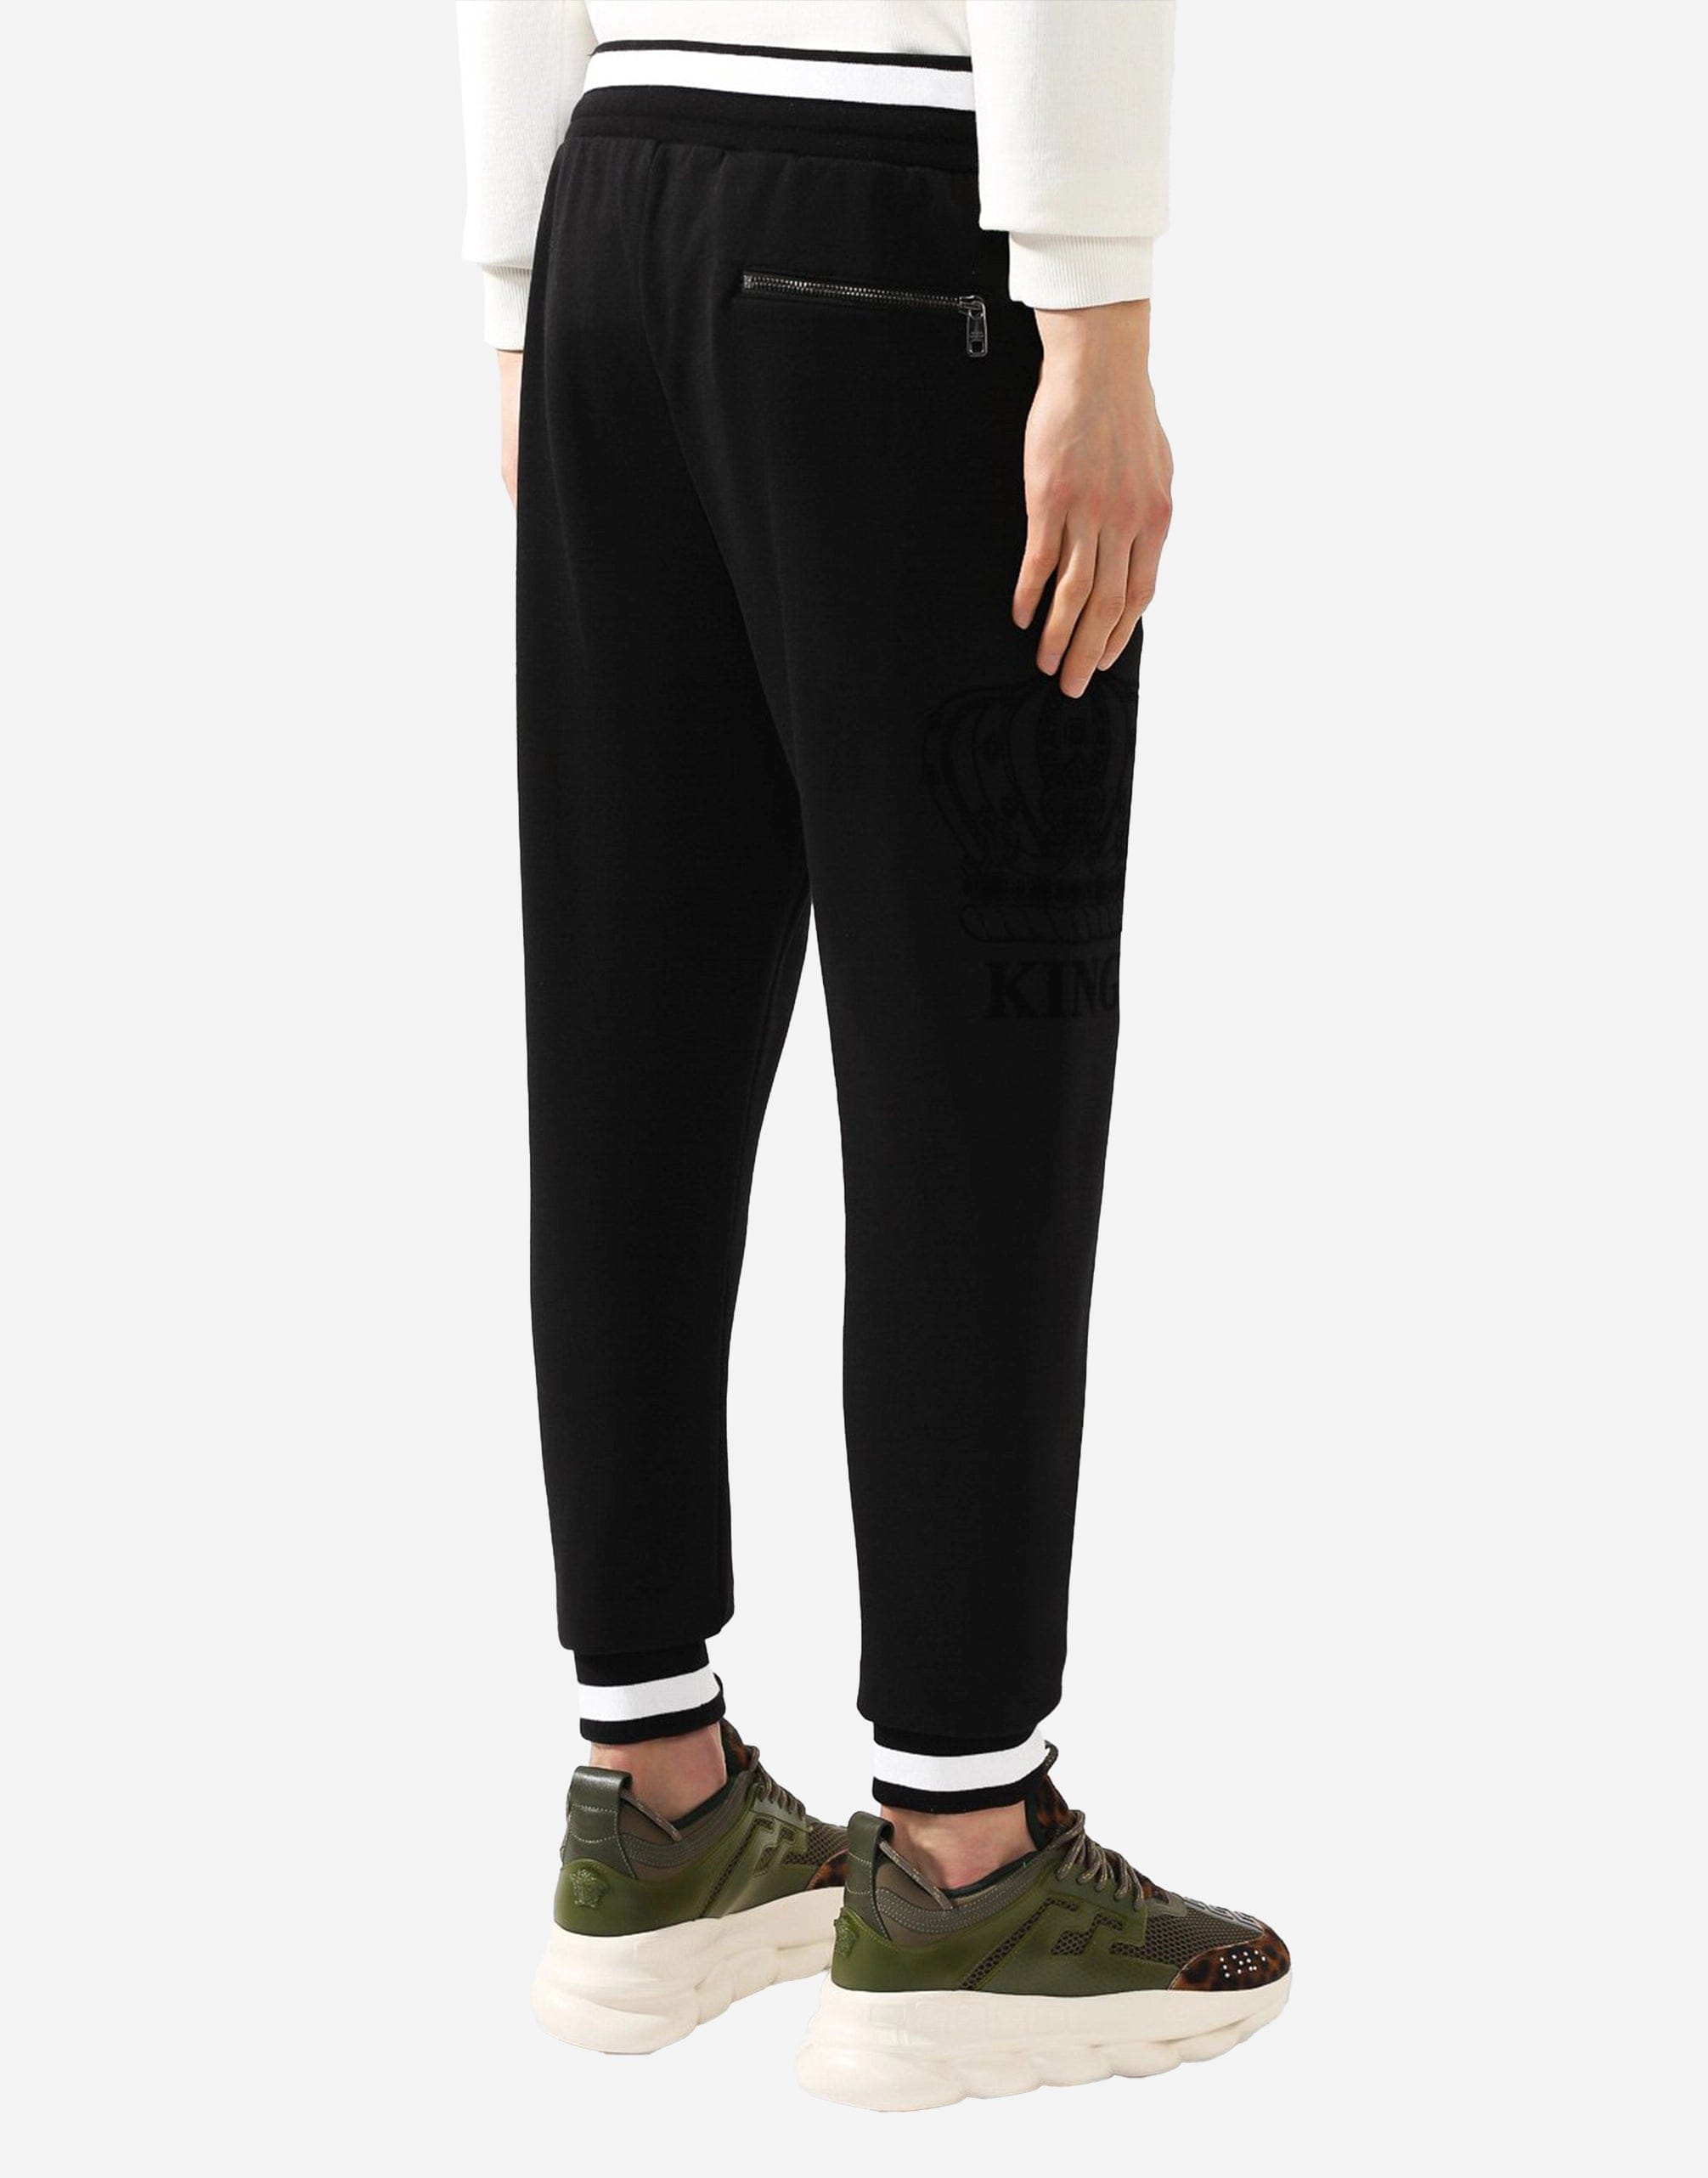 Dolce & Gabbana Black Cotton Logo Sweatpants Jogging Pants